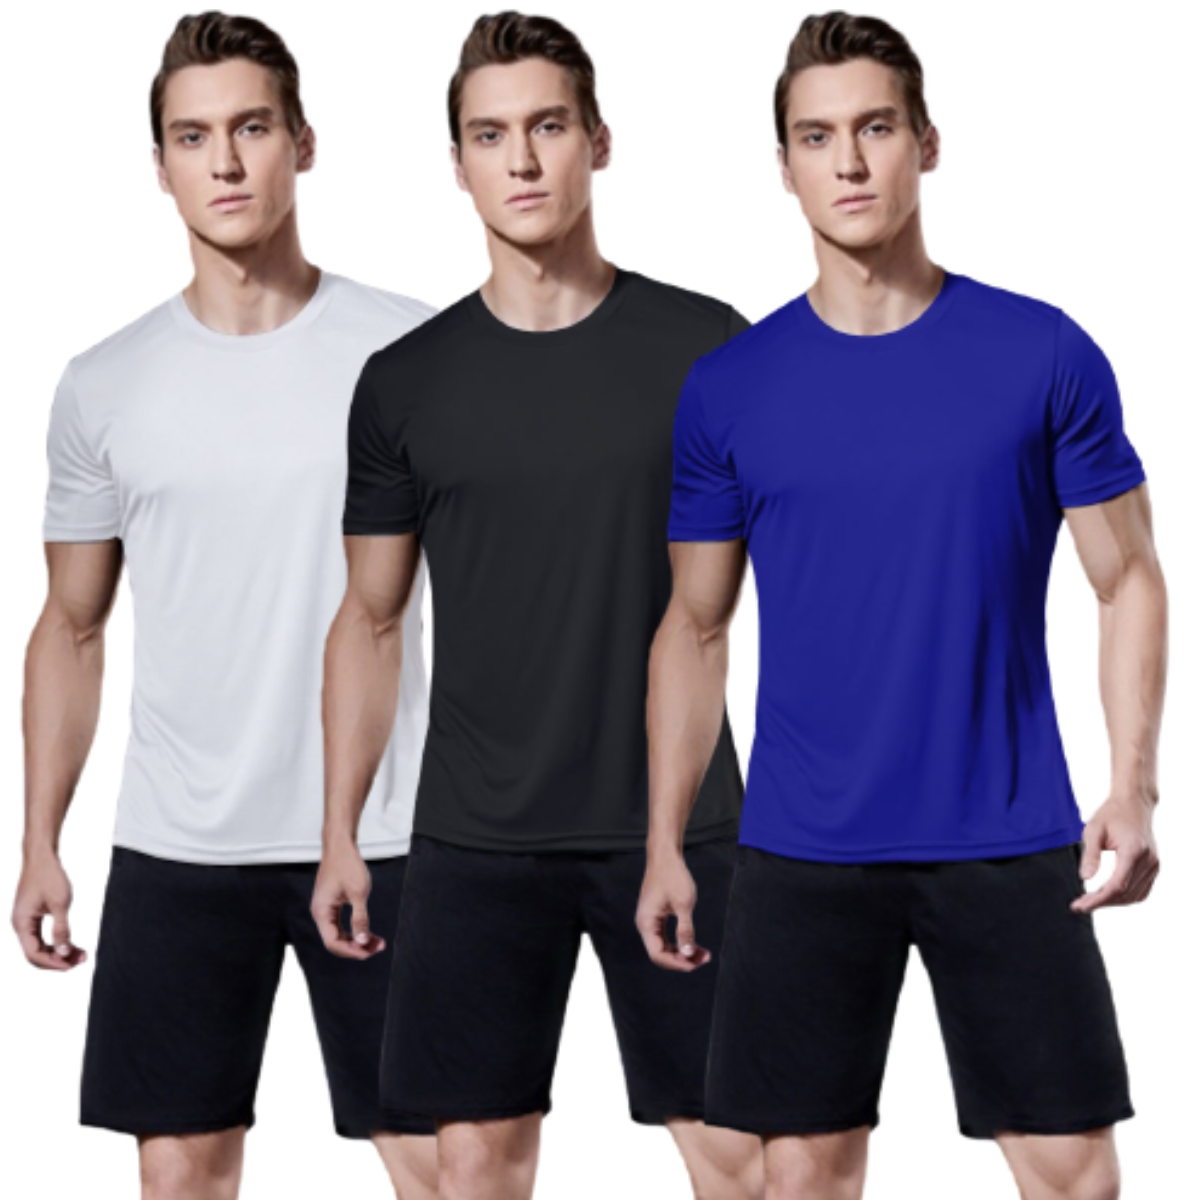 kit 3 camisas térmicas com proteção UV branca, preta e azul marinho